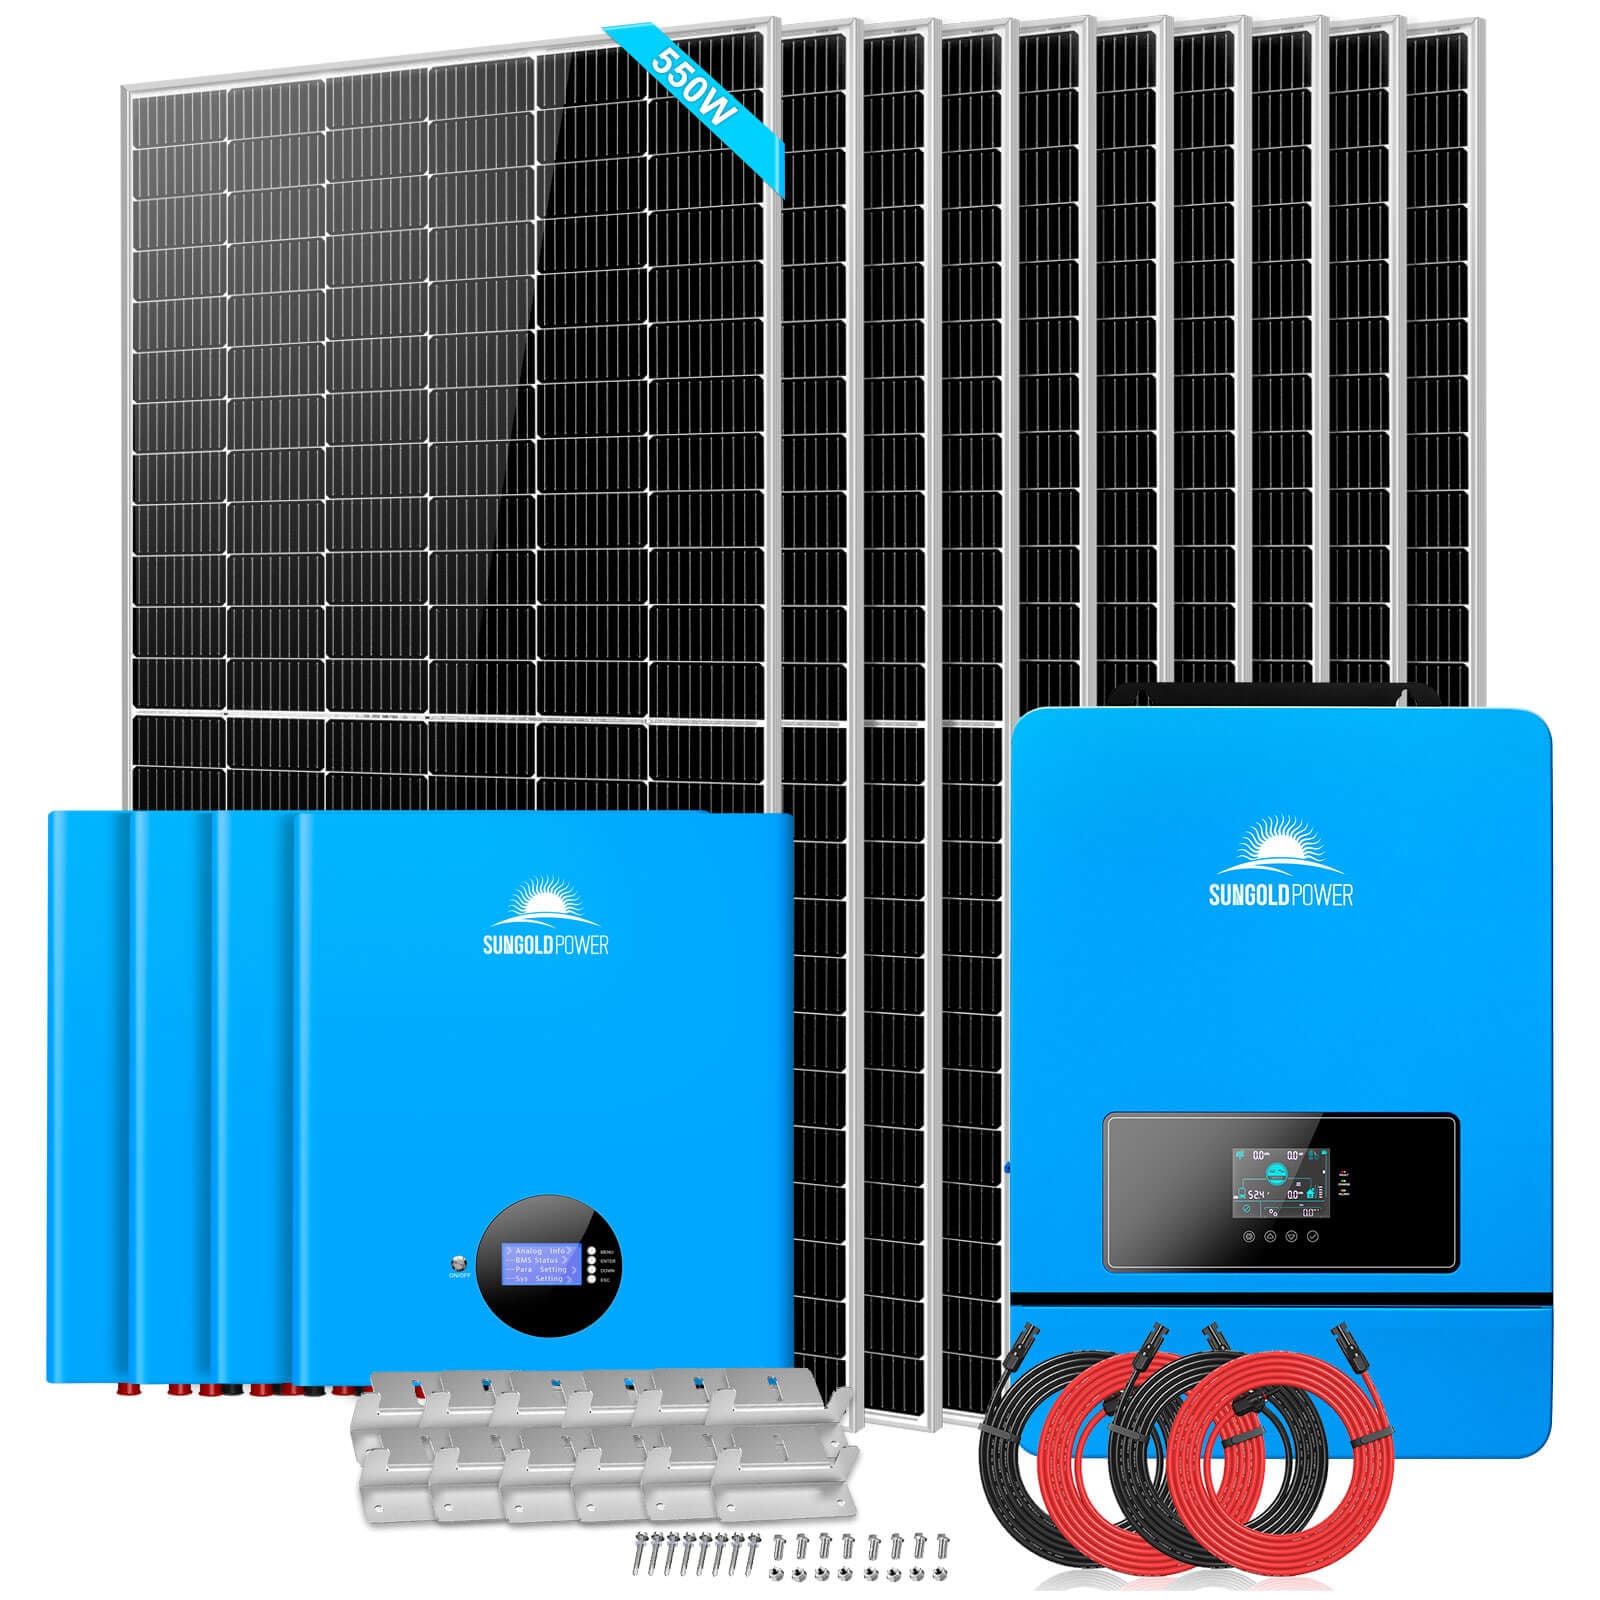 OFF GRID SOLAR KIT 10 X 550 WATTS SOLAR PANELS 4 X 5.12KWH POWERWALL LITHIUM BATTERY 10KW SOLAR INVERTER 48VDC 120V/240V SGM-10K20 SunGoldPower Off Grid Solar Kit